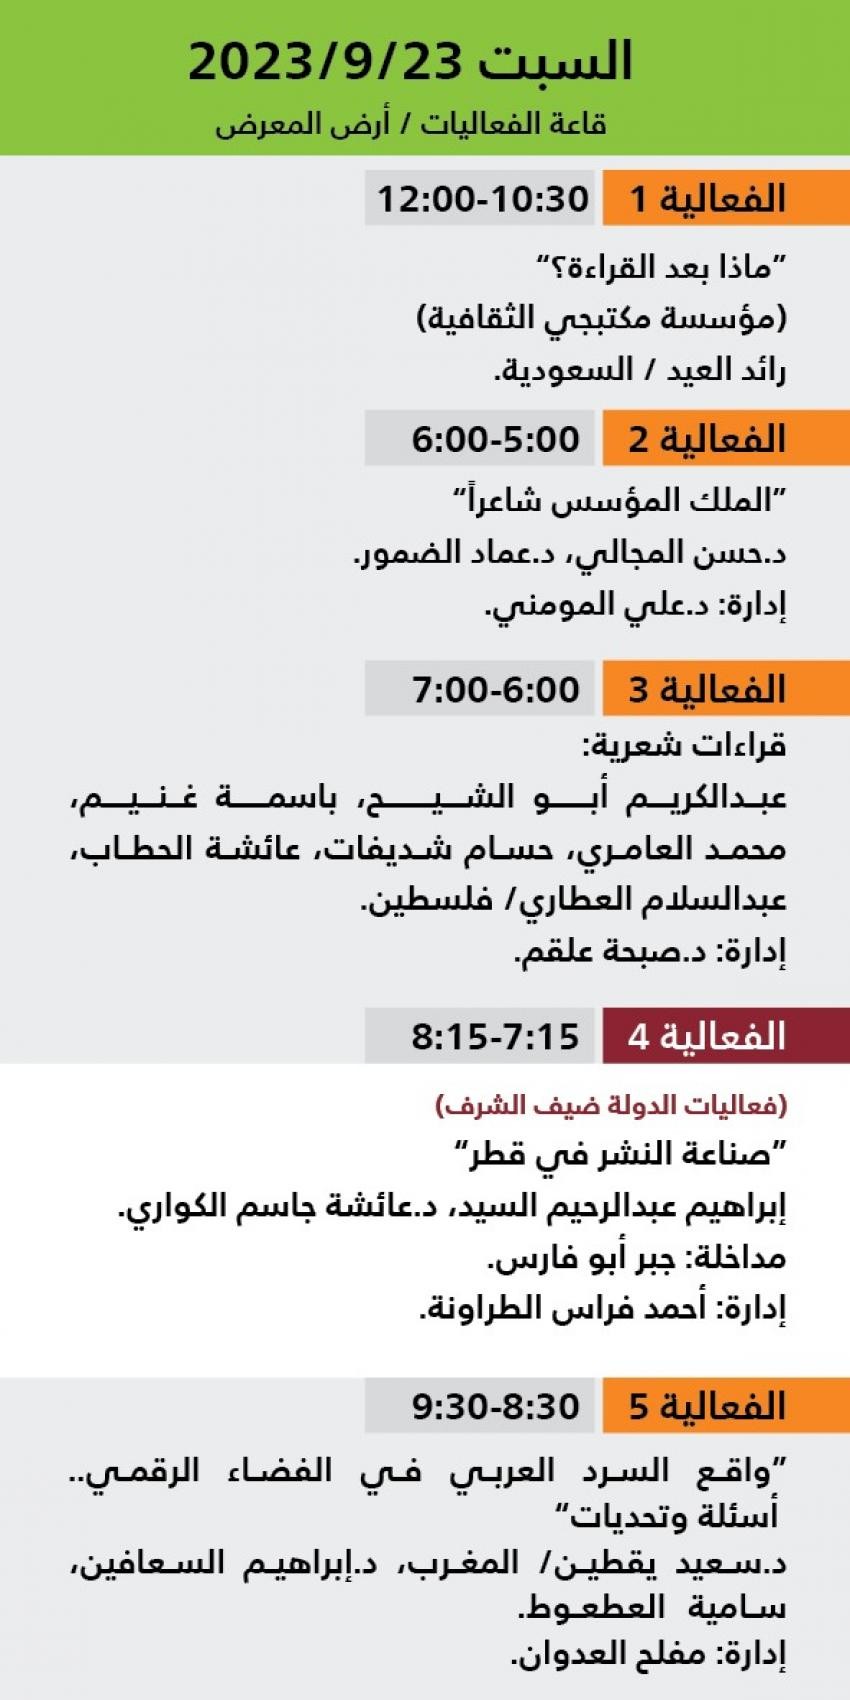 اليوم الثالث فعاليات معرض عمان للكتاب 2023.jfif